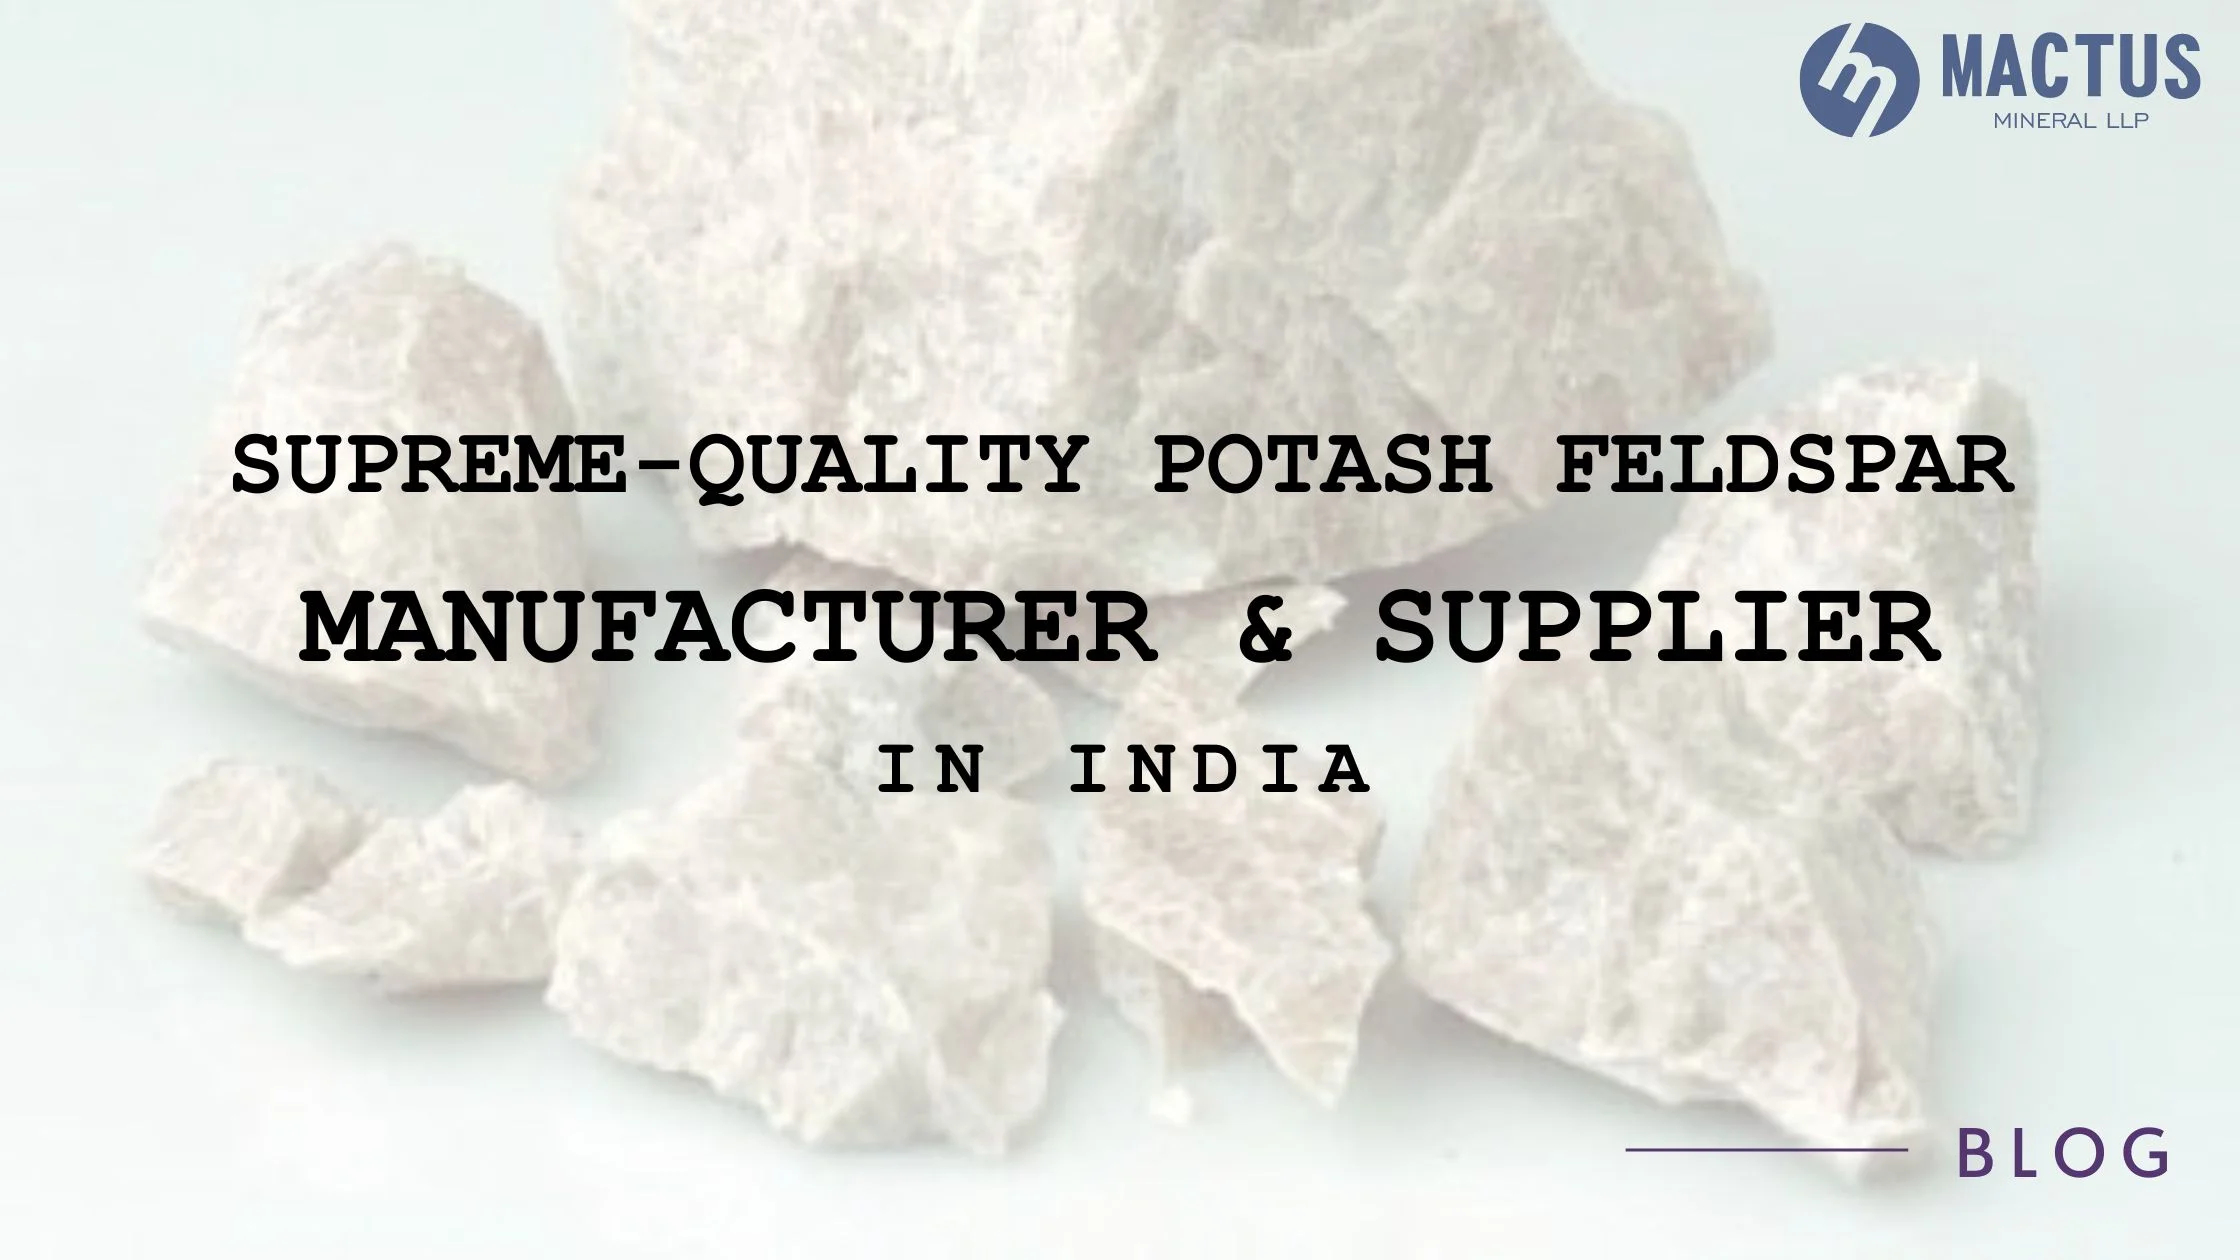 Supreme-Quality Potash Feldspar Manufacturer & Supplier in India